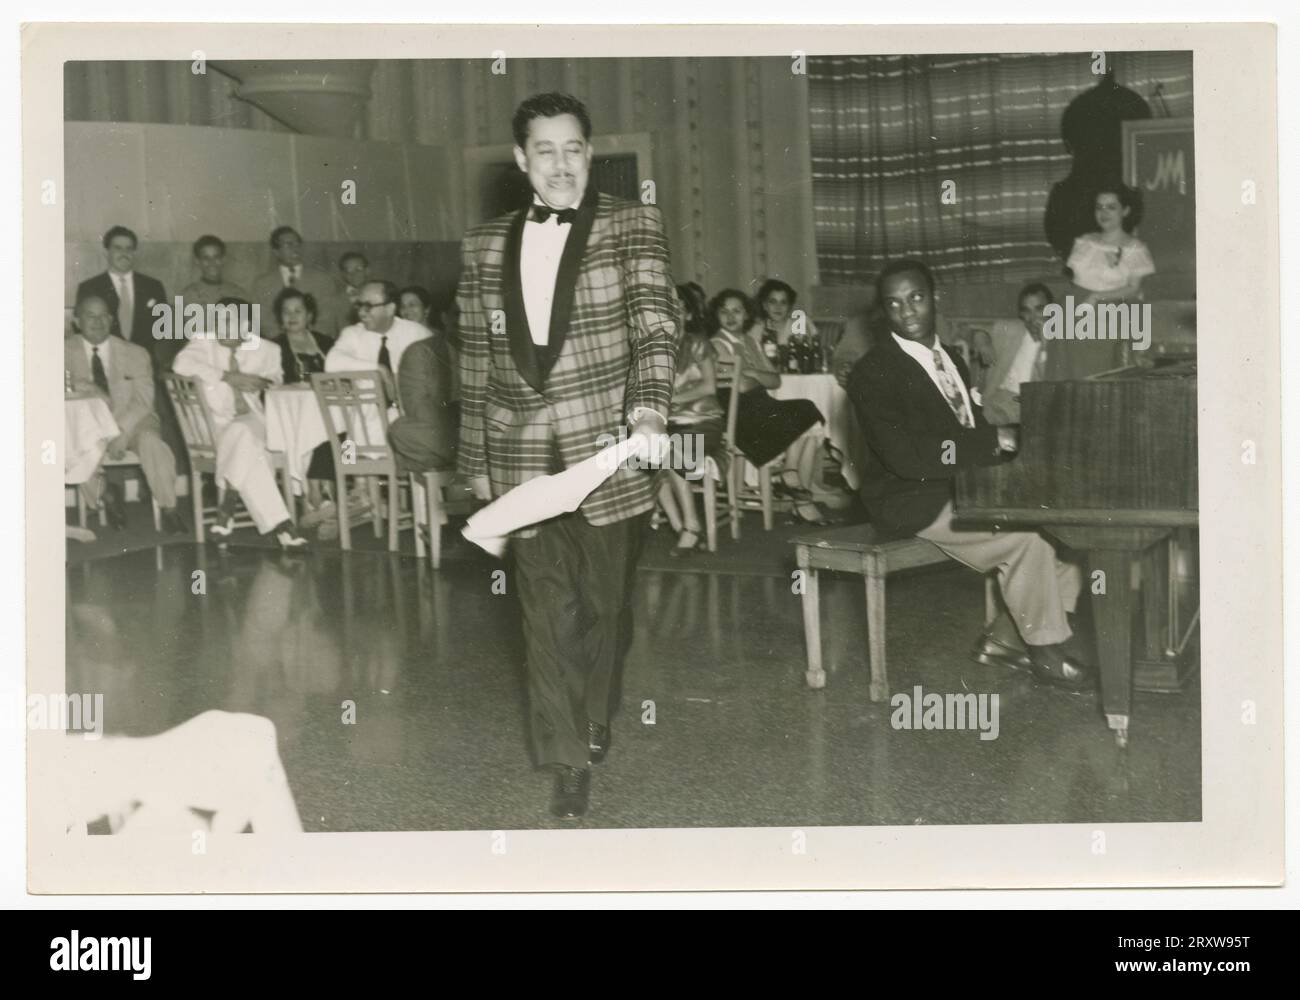 S & W-Foto von Cab Calloway, das tanzt, während ein Mann Klavier spielt. Calloway hält ein weißes Taschentuch in seiner PL-Hand und trägt eine karierte Anzugjacke mit dunkler Hose. Eine große Gruppe von Menschen sitzt an Tischen hinter Calloway. Ein gelber Haftnotiz auf der Rückseite des Fotos lautet [Hotel/National/in/Cuba]. Stockfoto